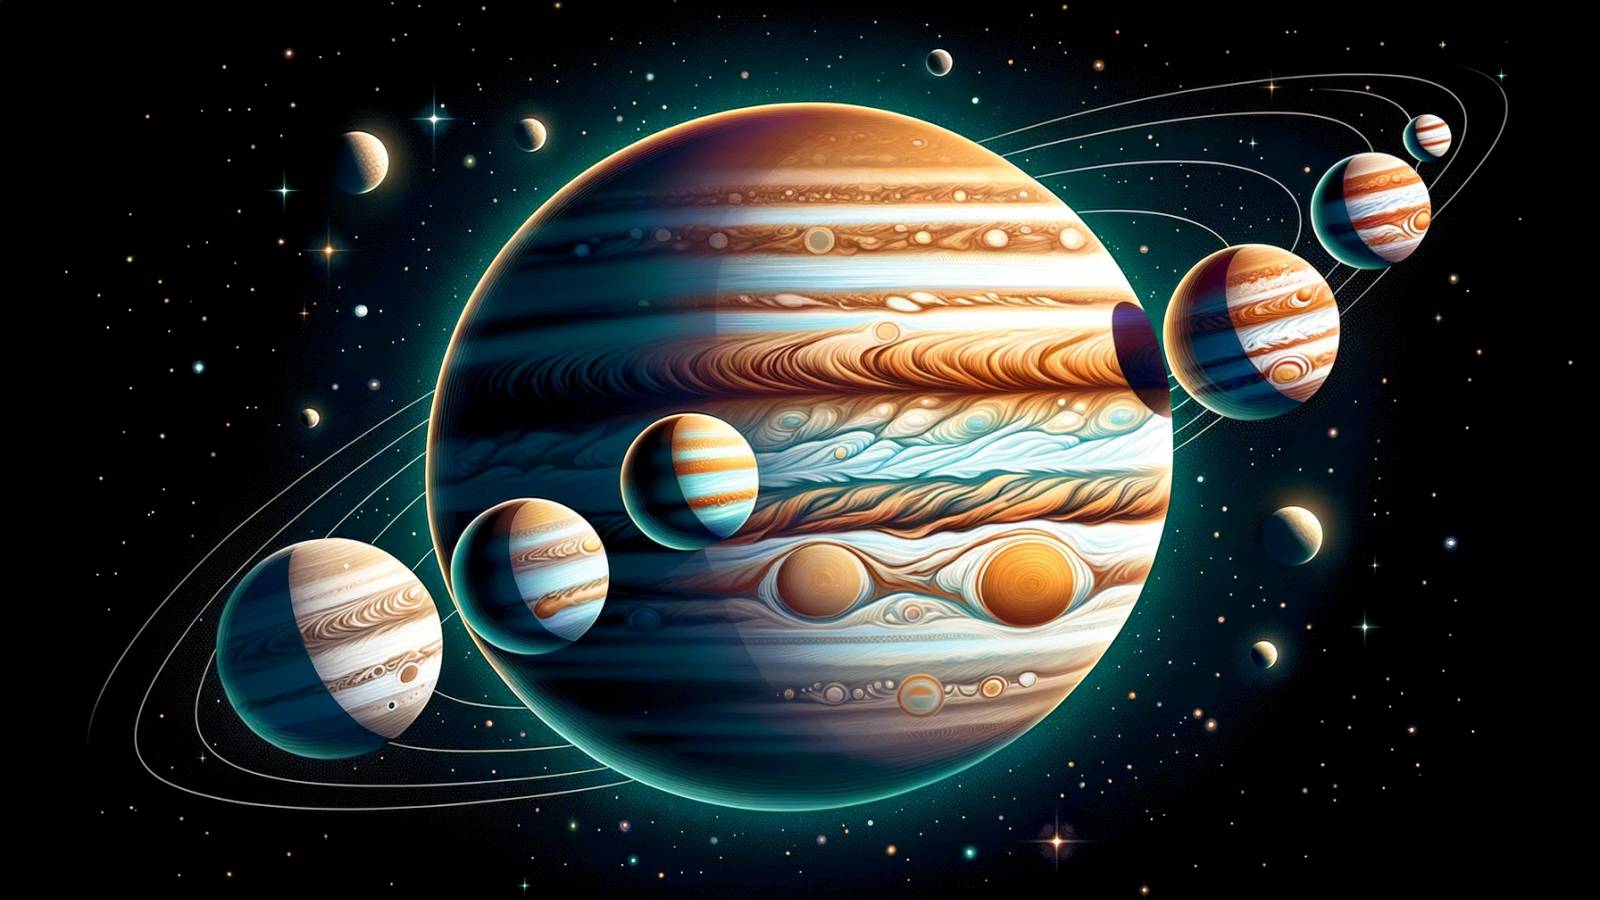 Planet Jupiter FANTASTISCHES NASA-VIDEO Letzter Überlebender Juno